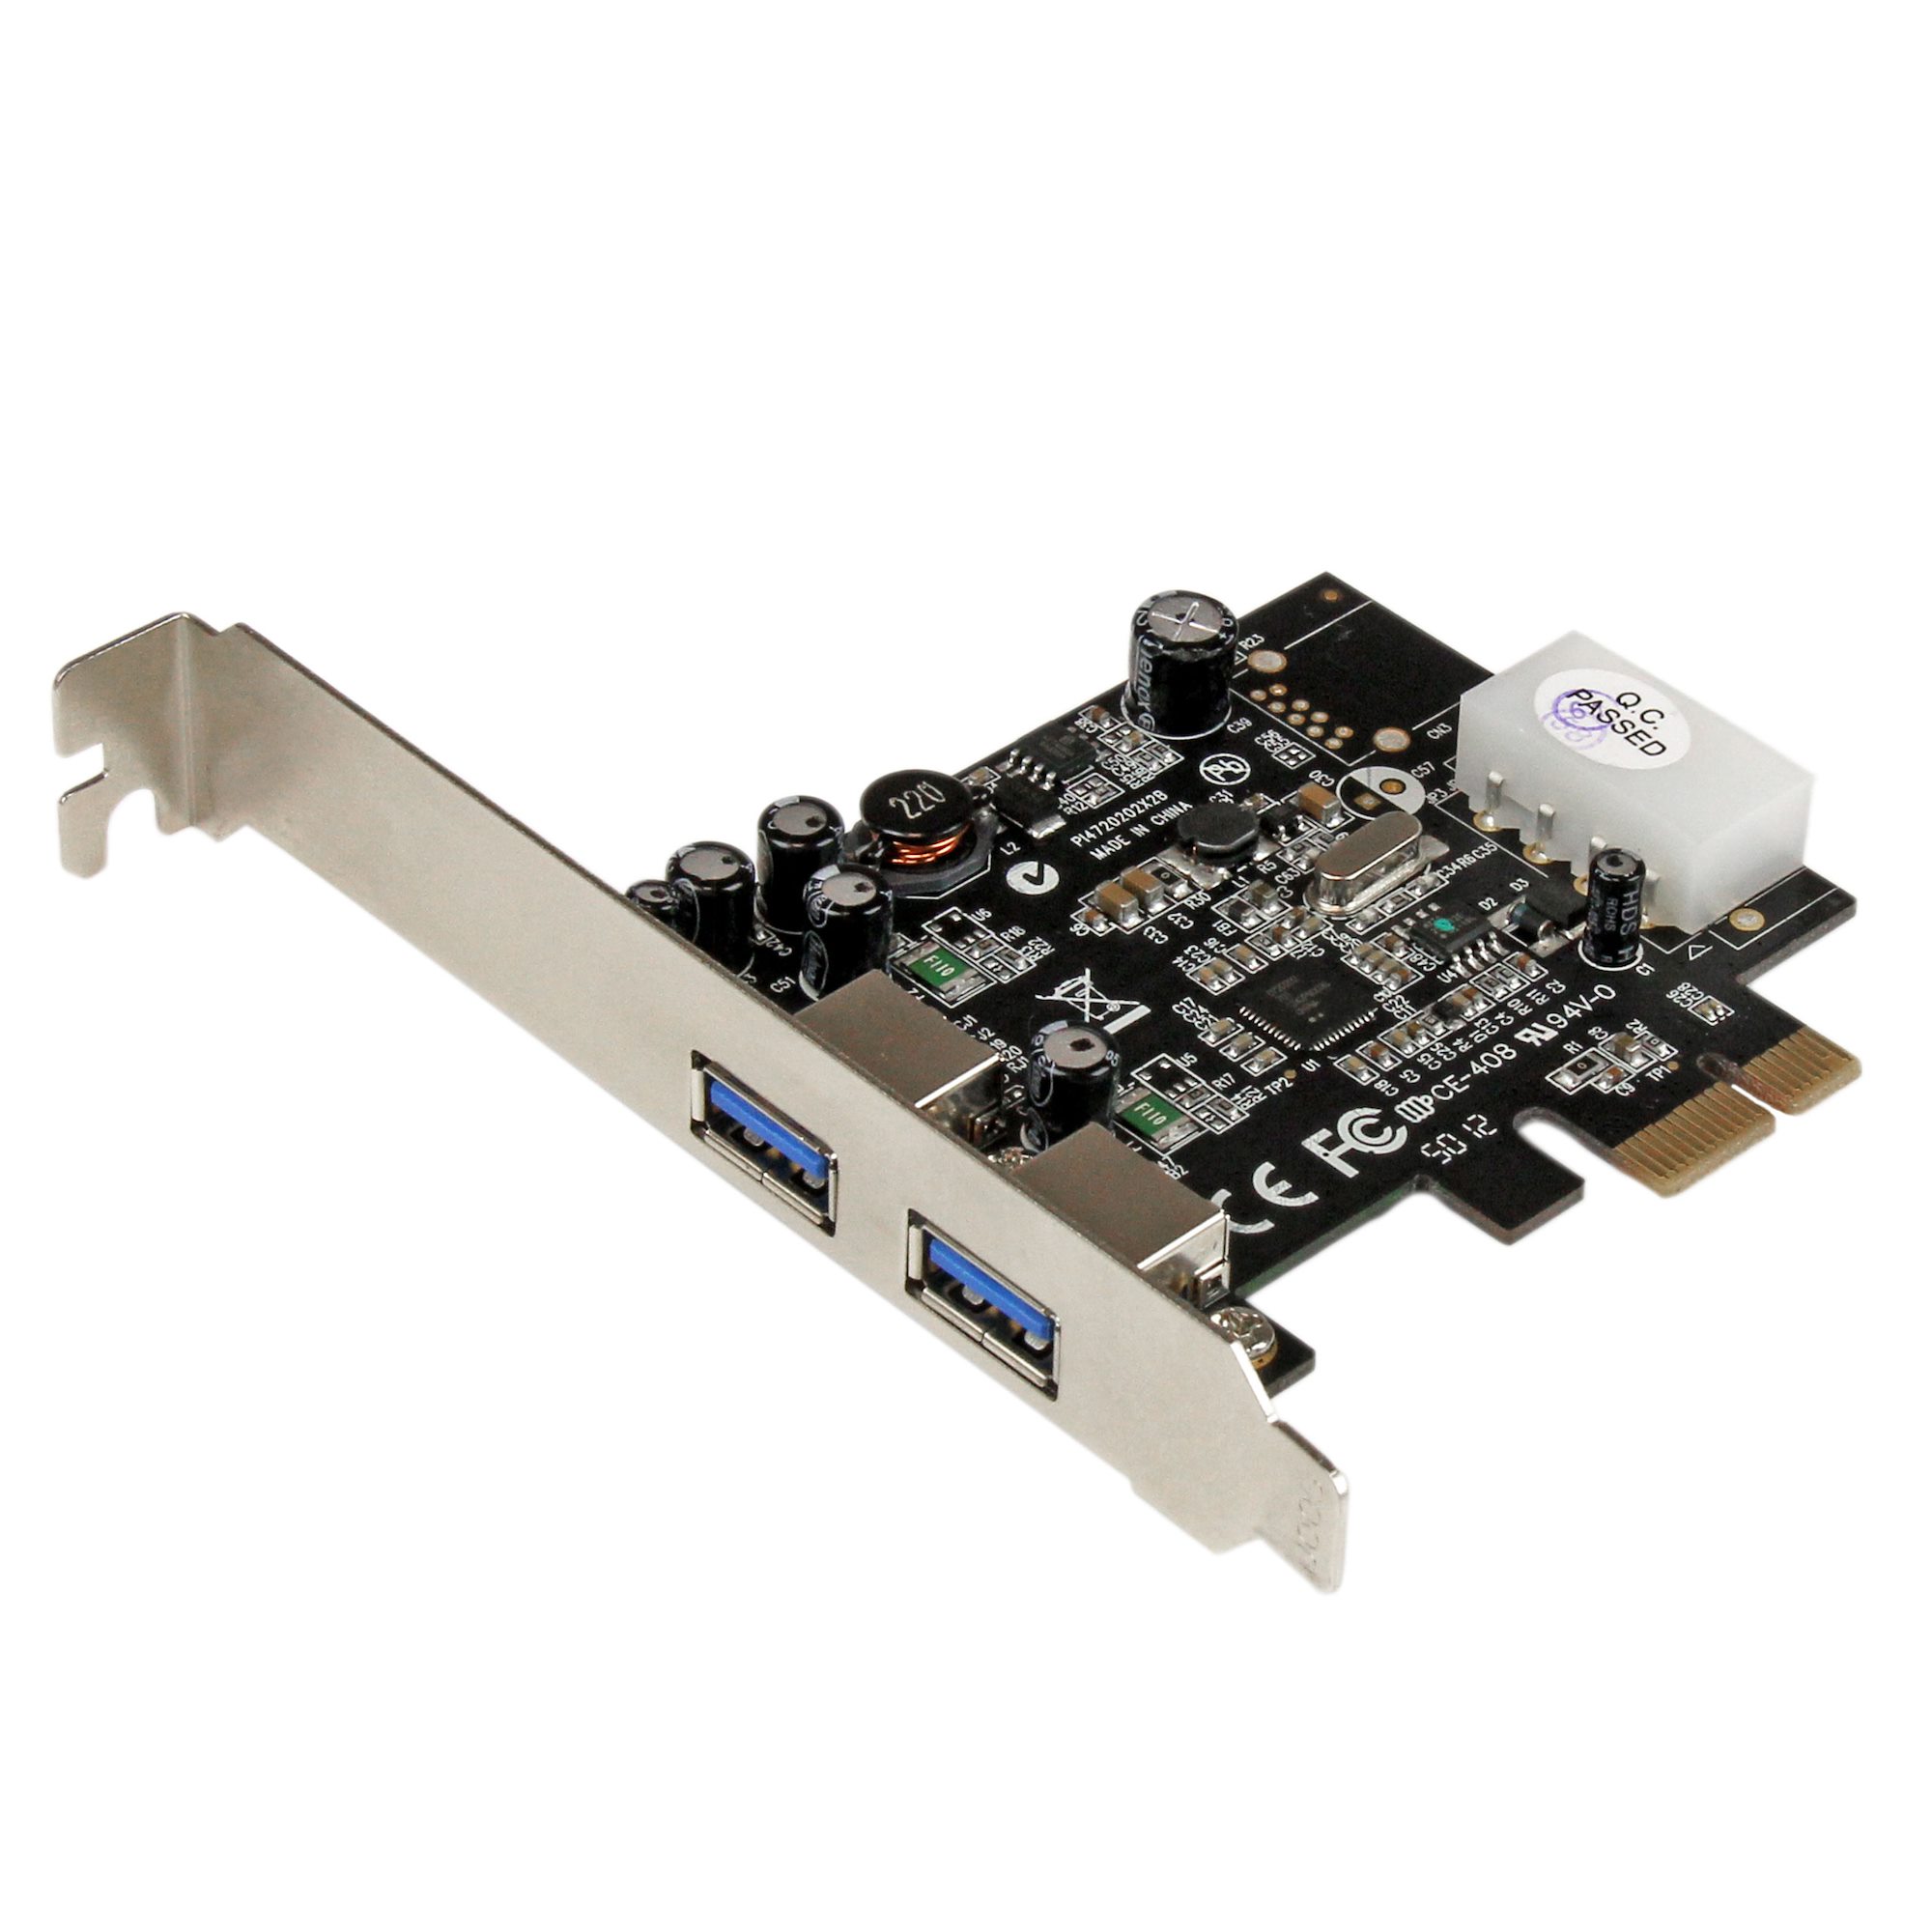 Deskundige Horzel Brouwerij 2 Port PCIe USB 3.0 Card w/ UASP - 5Gbps - USB 3.0 Cards | StarTech.com